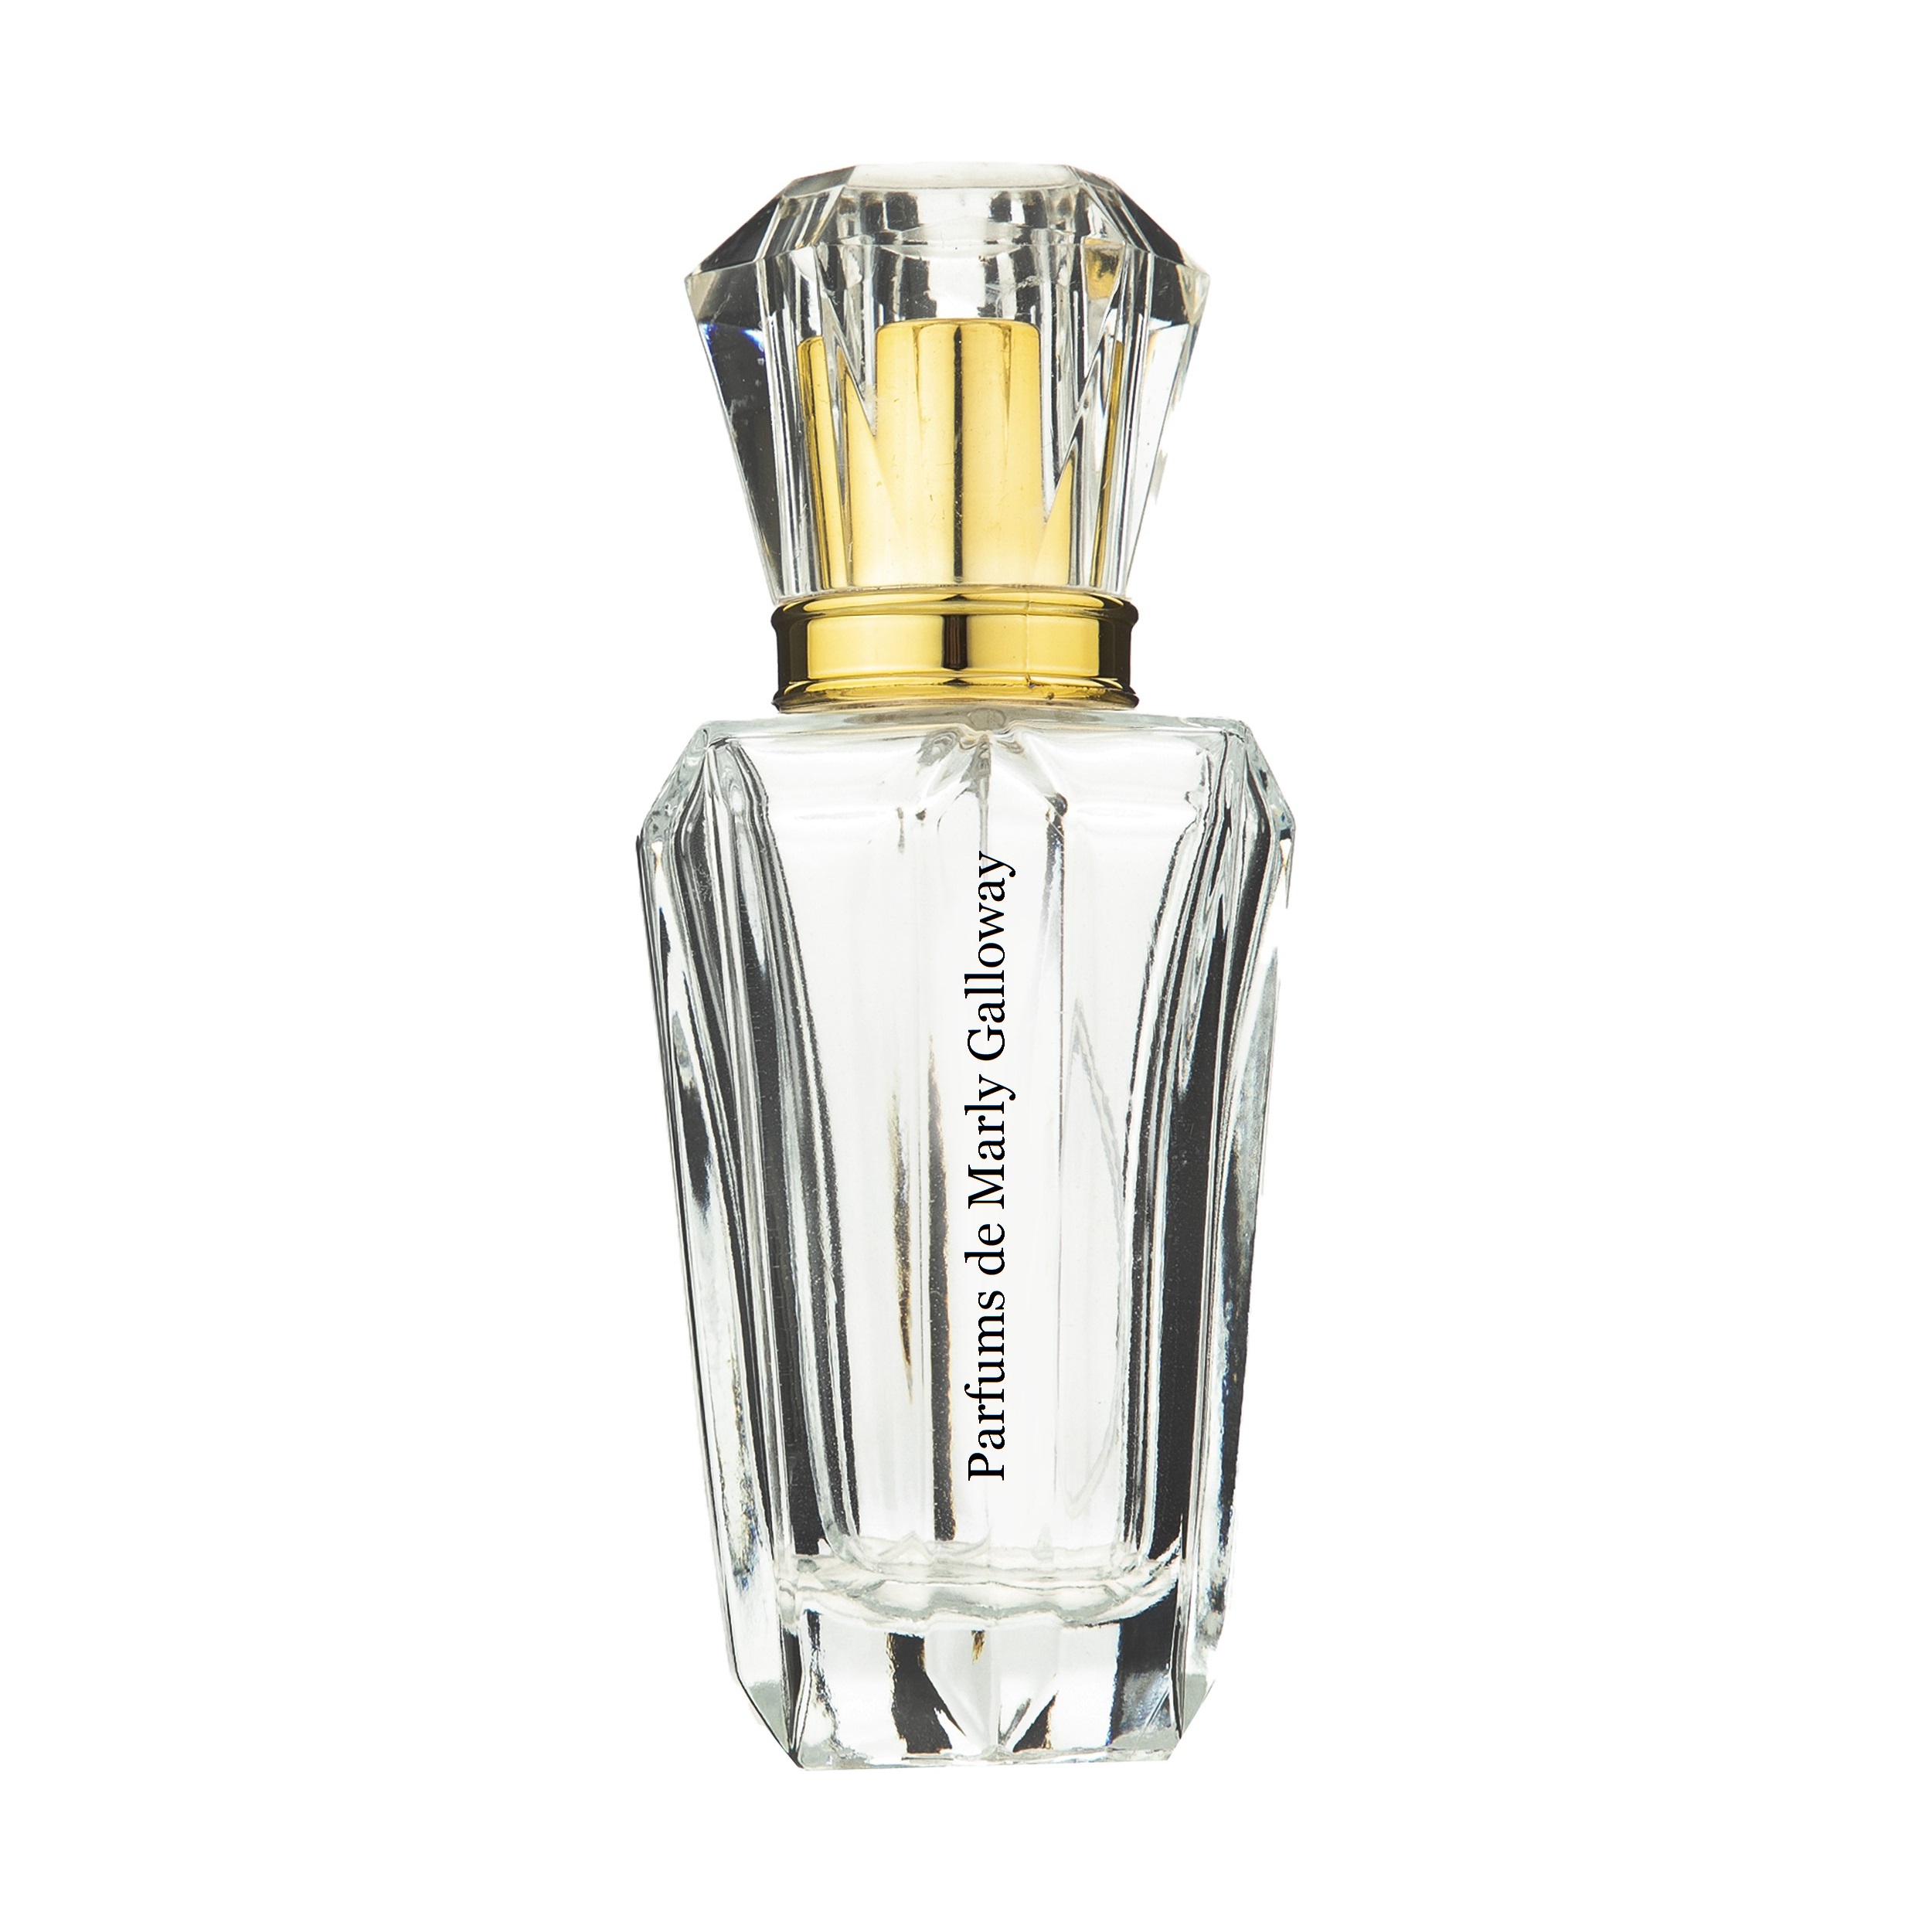 ادو پرفیوم راگوئل مدل Parfums de Marly Galloway حجم 50 میلی لیتر